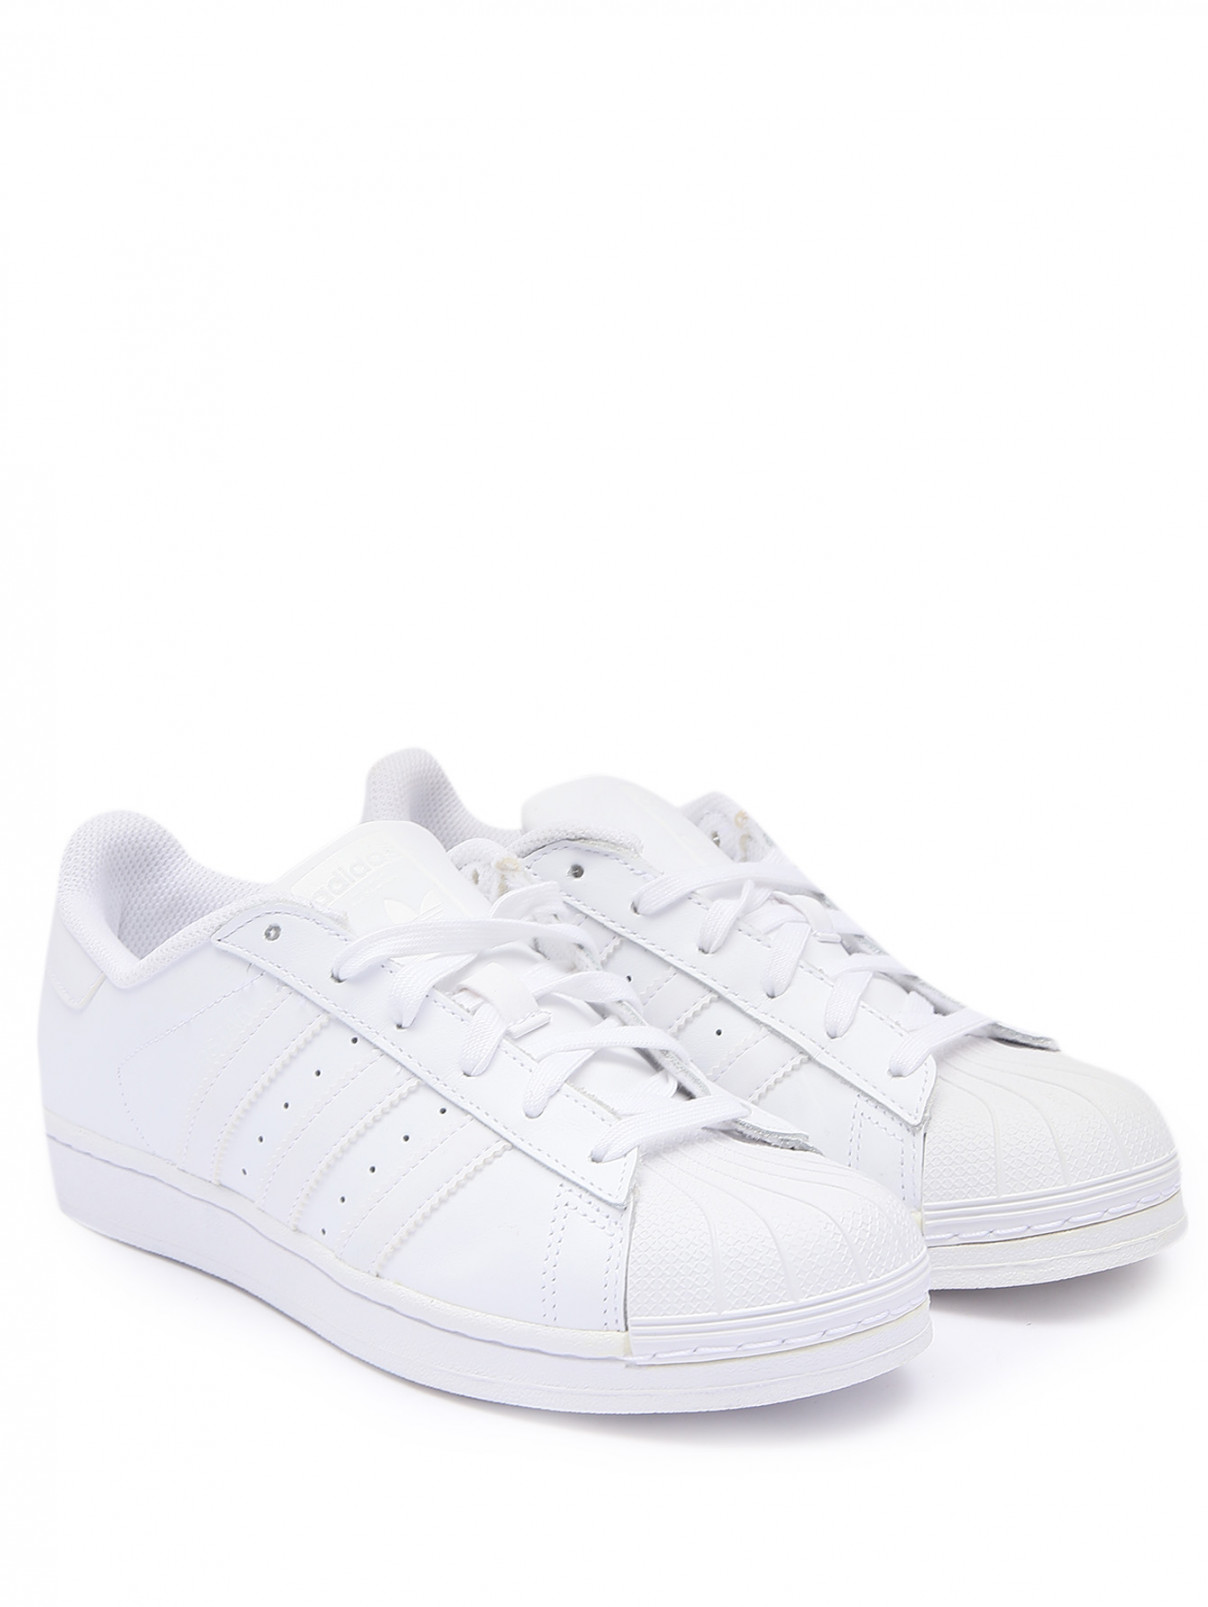 Комбинированные кеды на шнурках Adidas Originals  –  Общий вид  – Цвет:  Белый